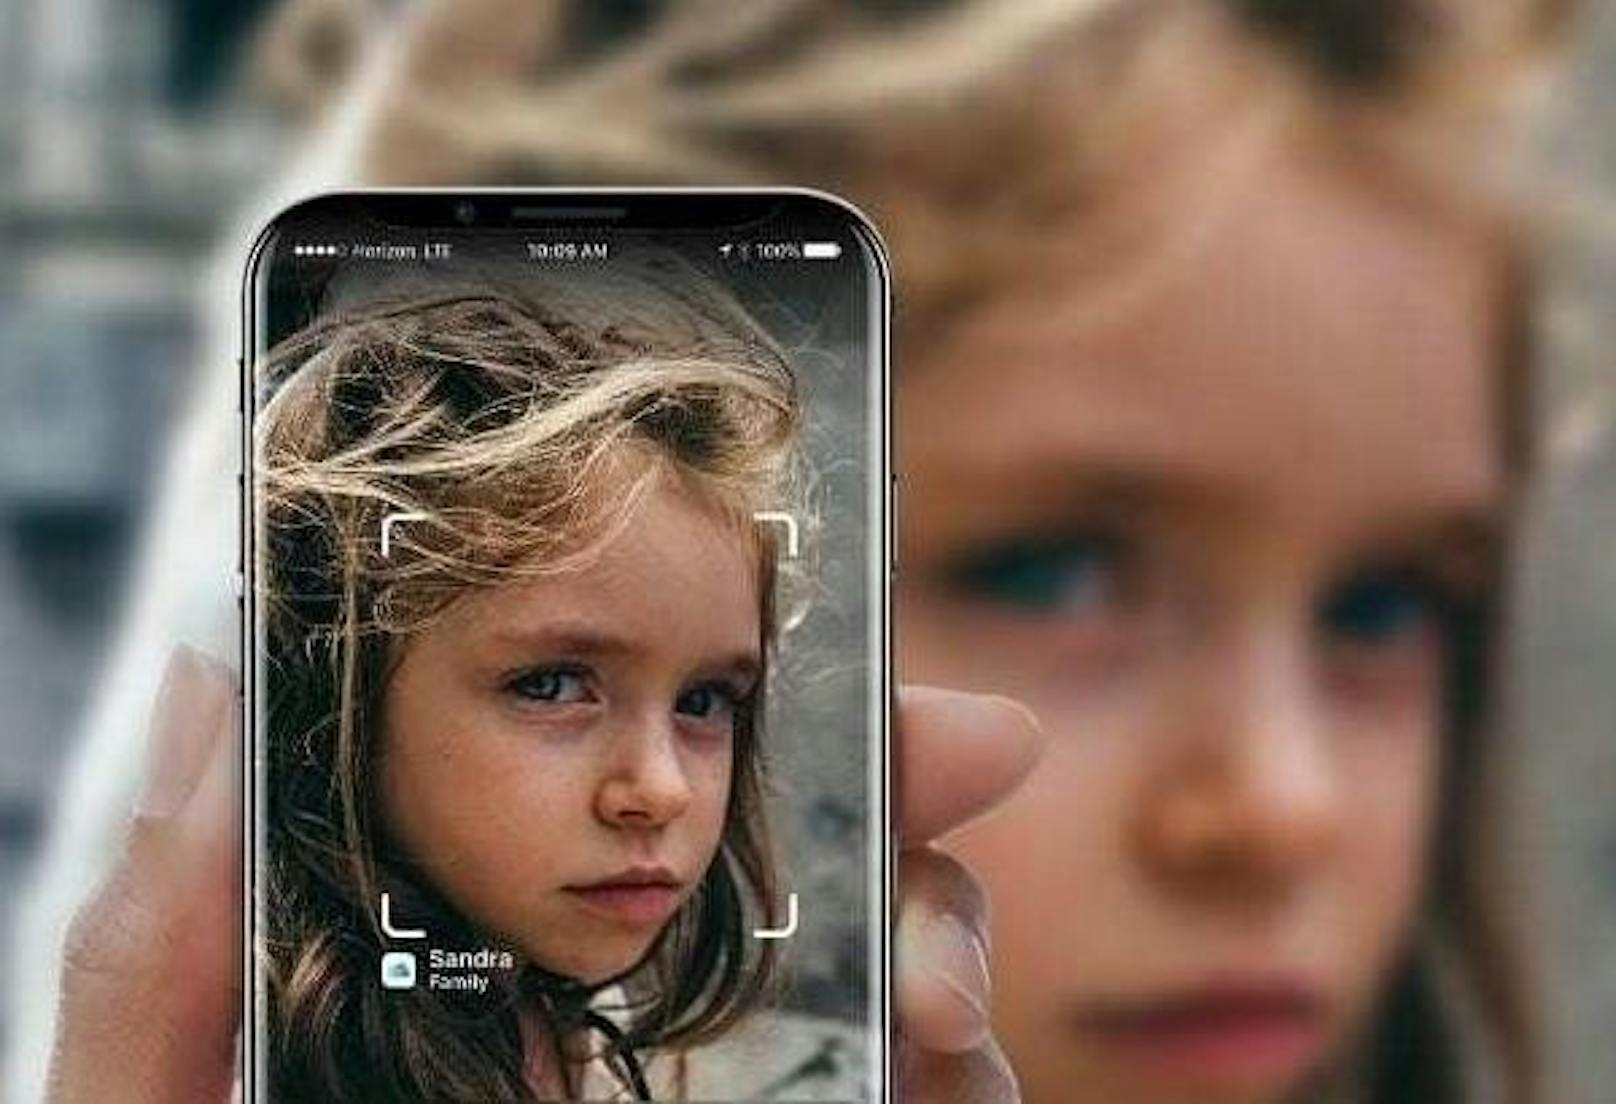 Lässt sich das nächste iPhone per Gesichtserkennung entsperren? Ja, sagt Bloomberg.com in einem aktuellen Bericht. Mit dem neuen 3D-Scanner sollen Nutzer nicht nur das iPhone entsperren, sondern auch Zahlungen auslösen können. Der Designer Gabor Balogh hat eine ähnliche Funktion schon vor längerer Zeit als Konzept entworfen.